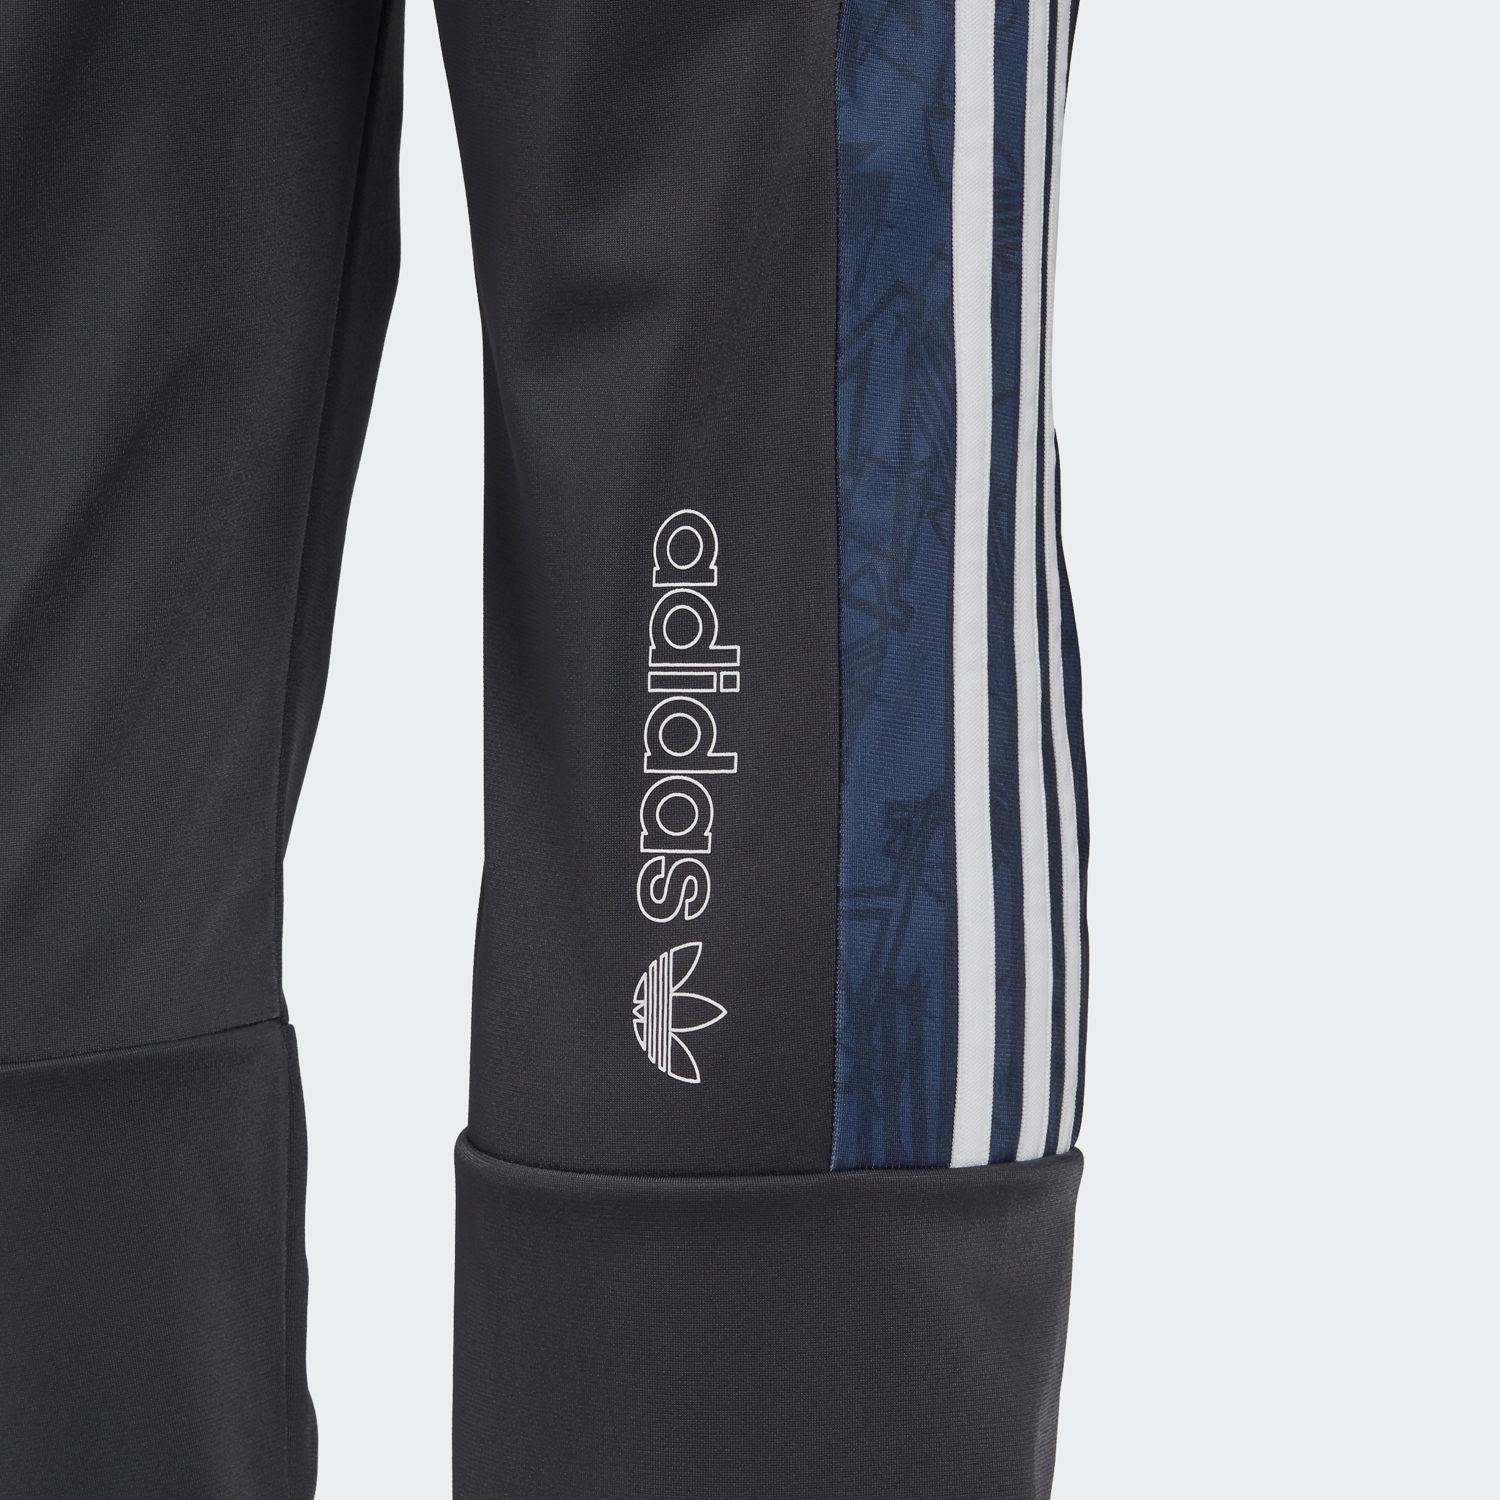 Adidas Men's BX-20 Graphic Sweat Pants GD5830